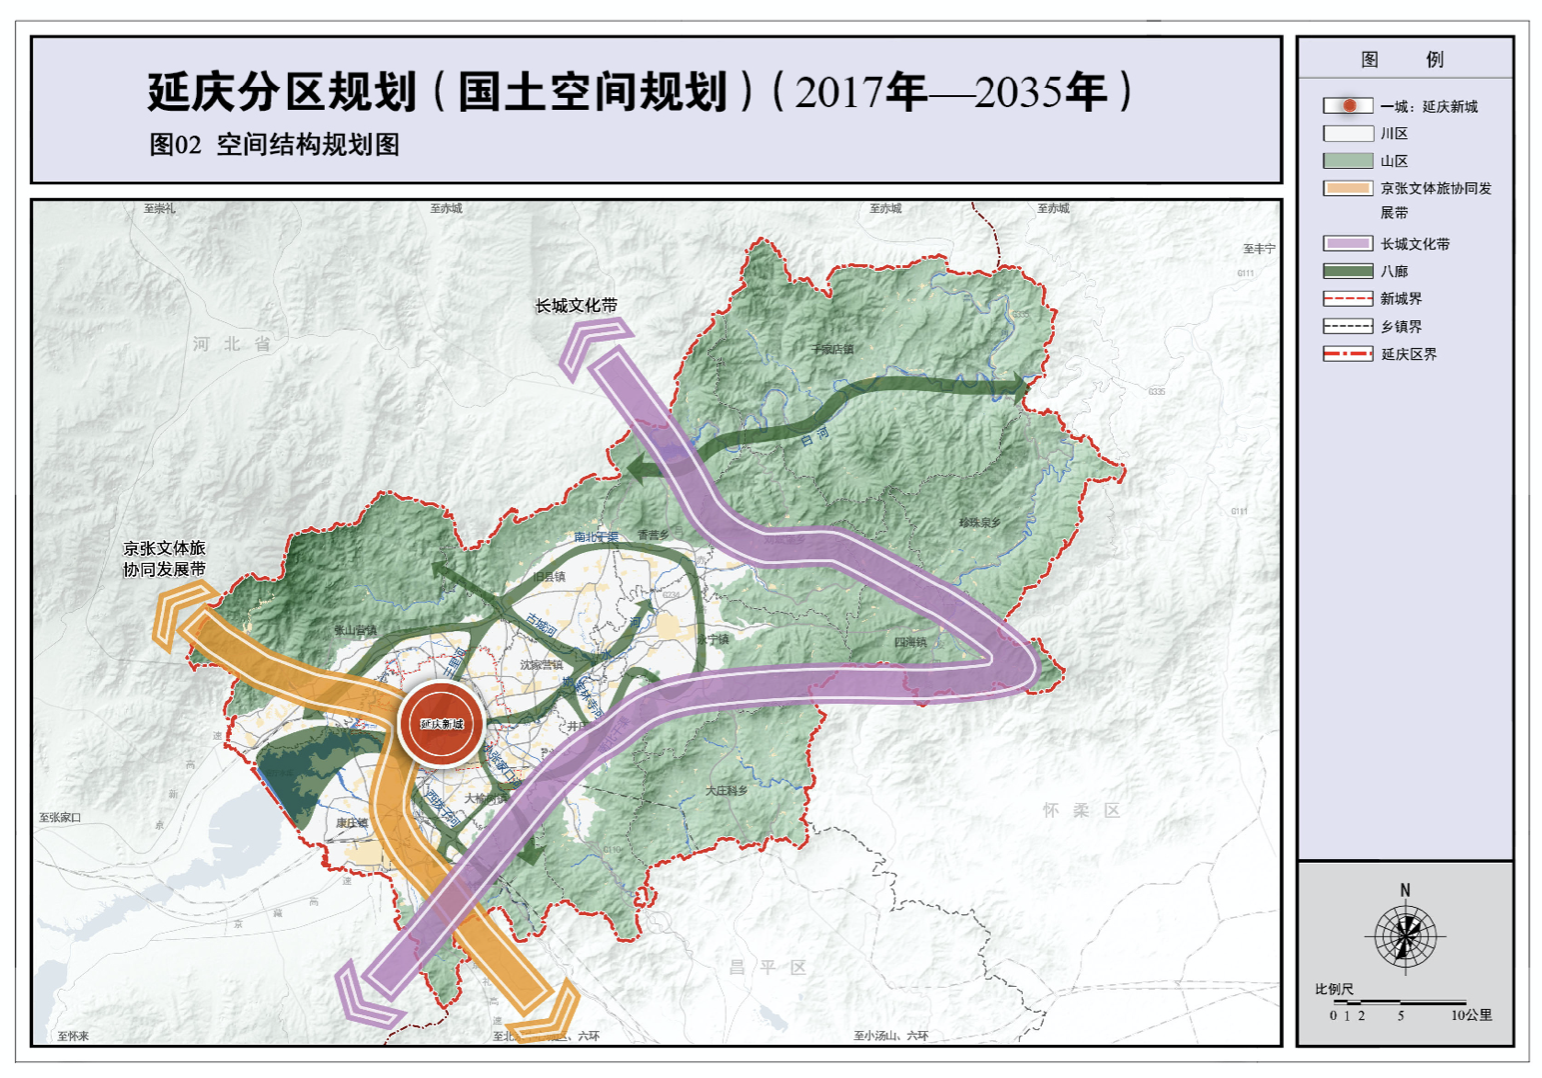 同时,规划还明确提出了延庆区将规划小城镇14个,包括康庄镇,永宁镇